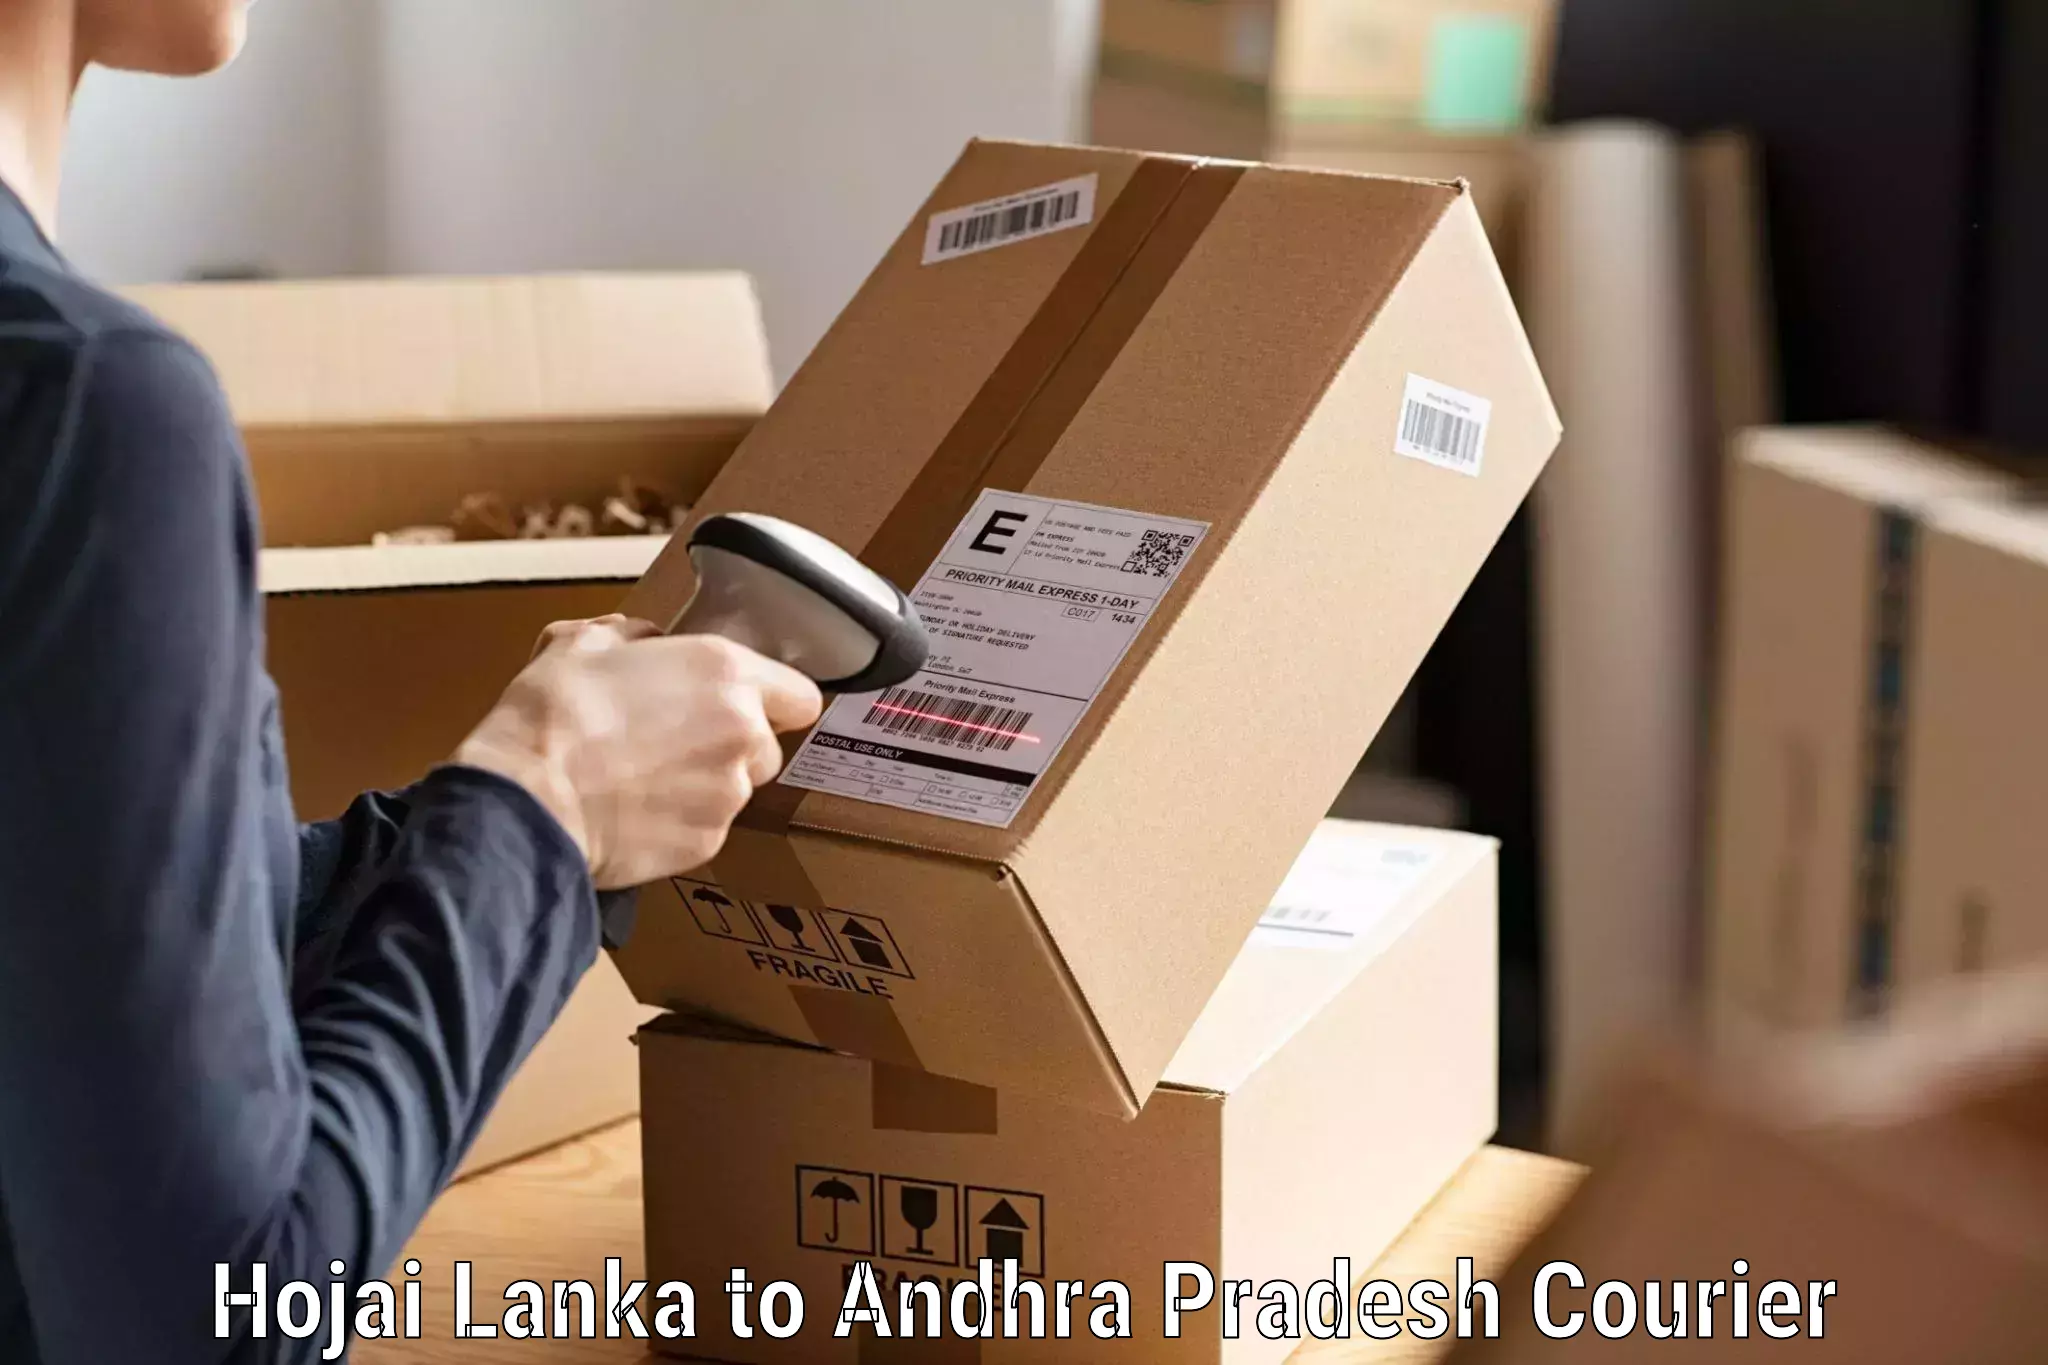 Express delivery capabilities Hojai Lanka to Mantada